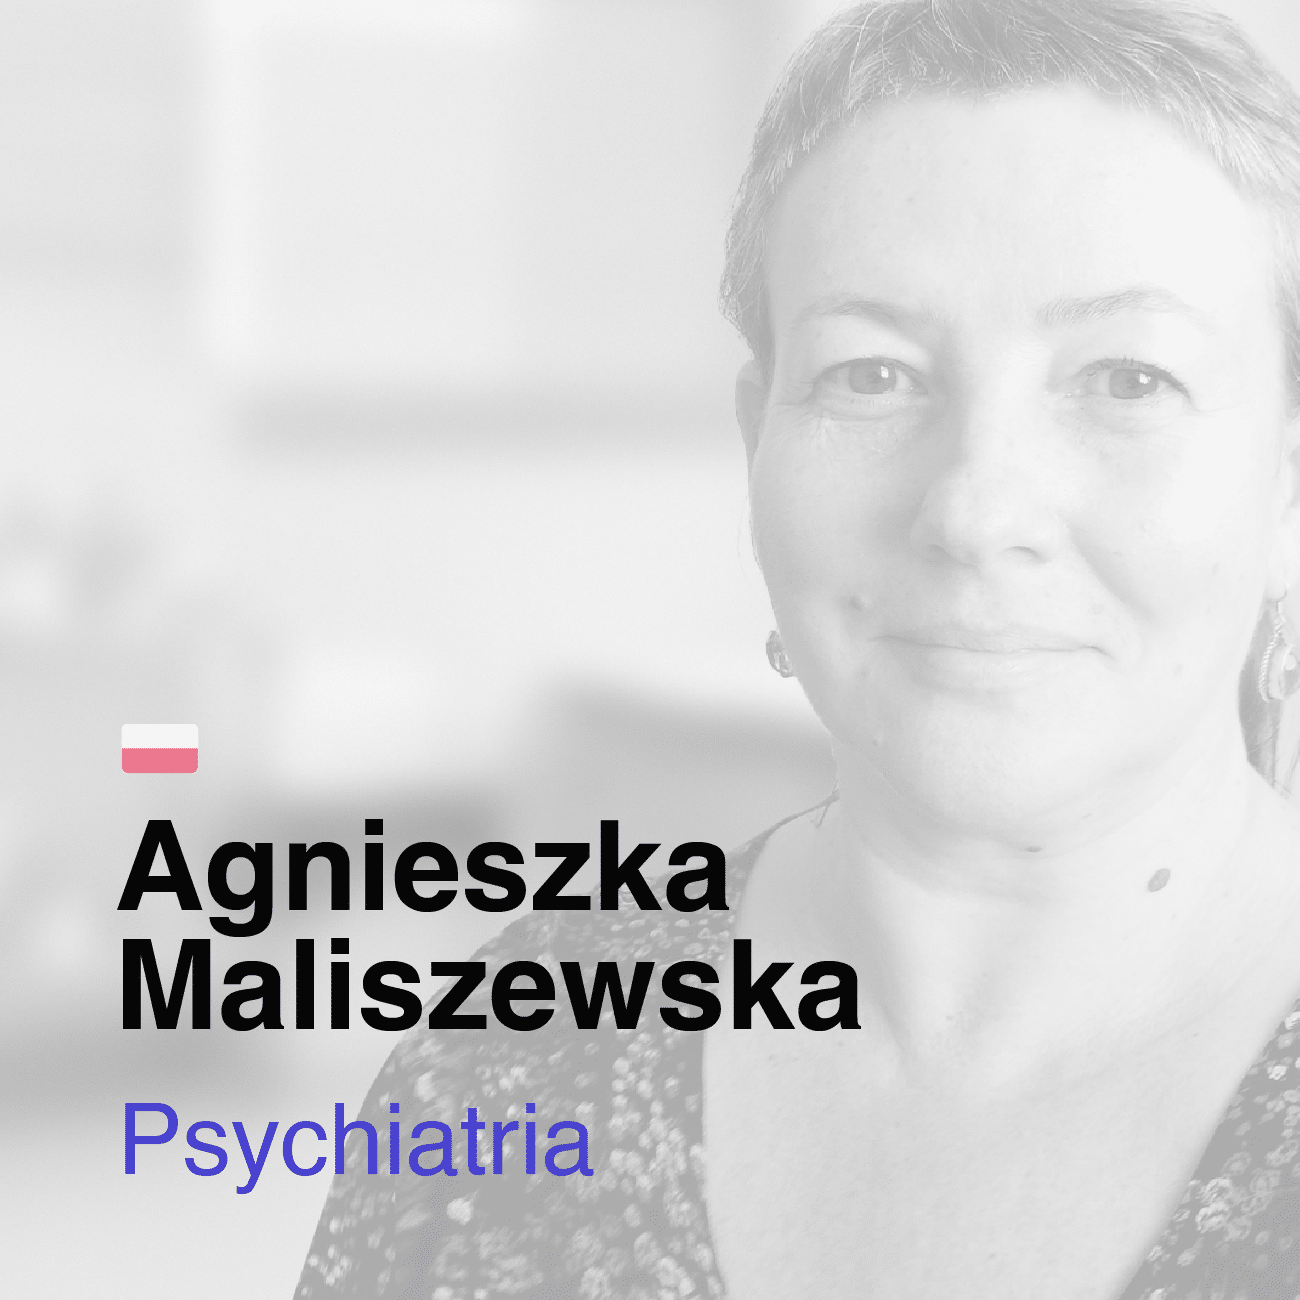 Agnieszka Maliszewska psychiatra medicana.pl Centrum Terapii Medyczna Marihuana